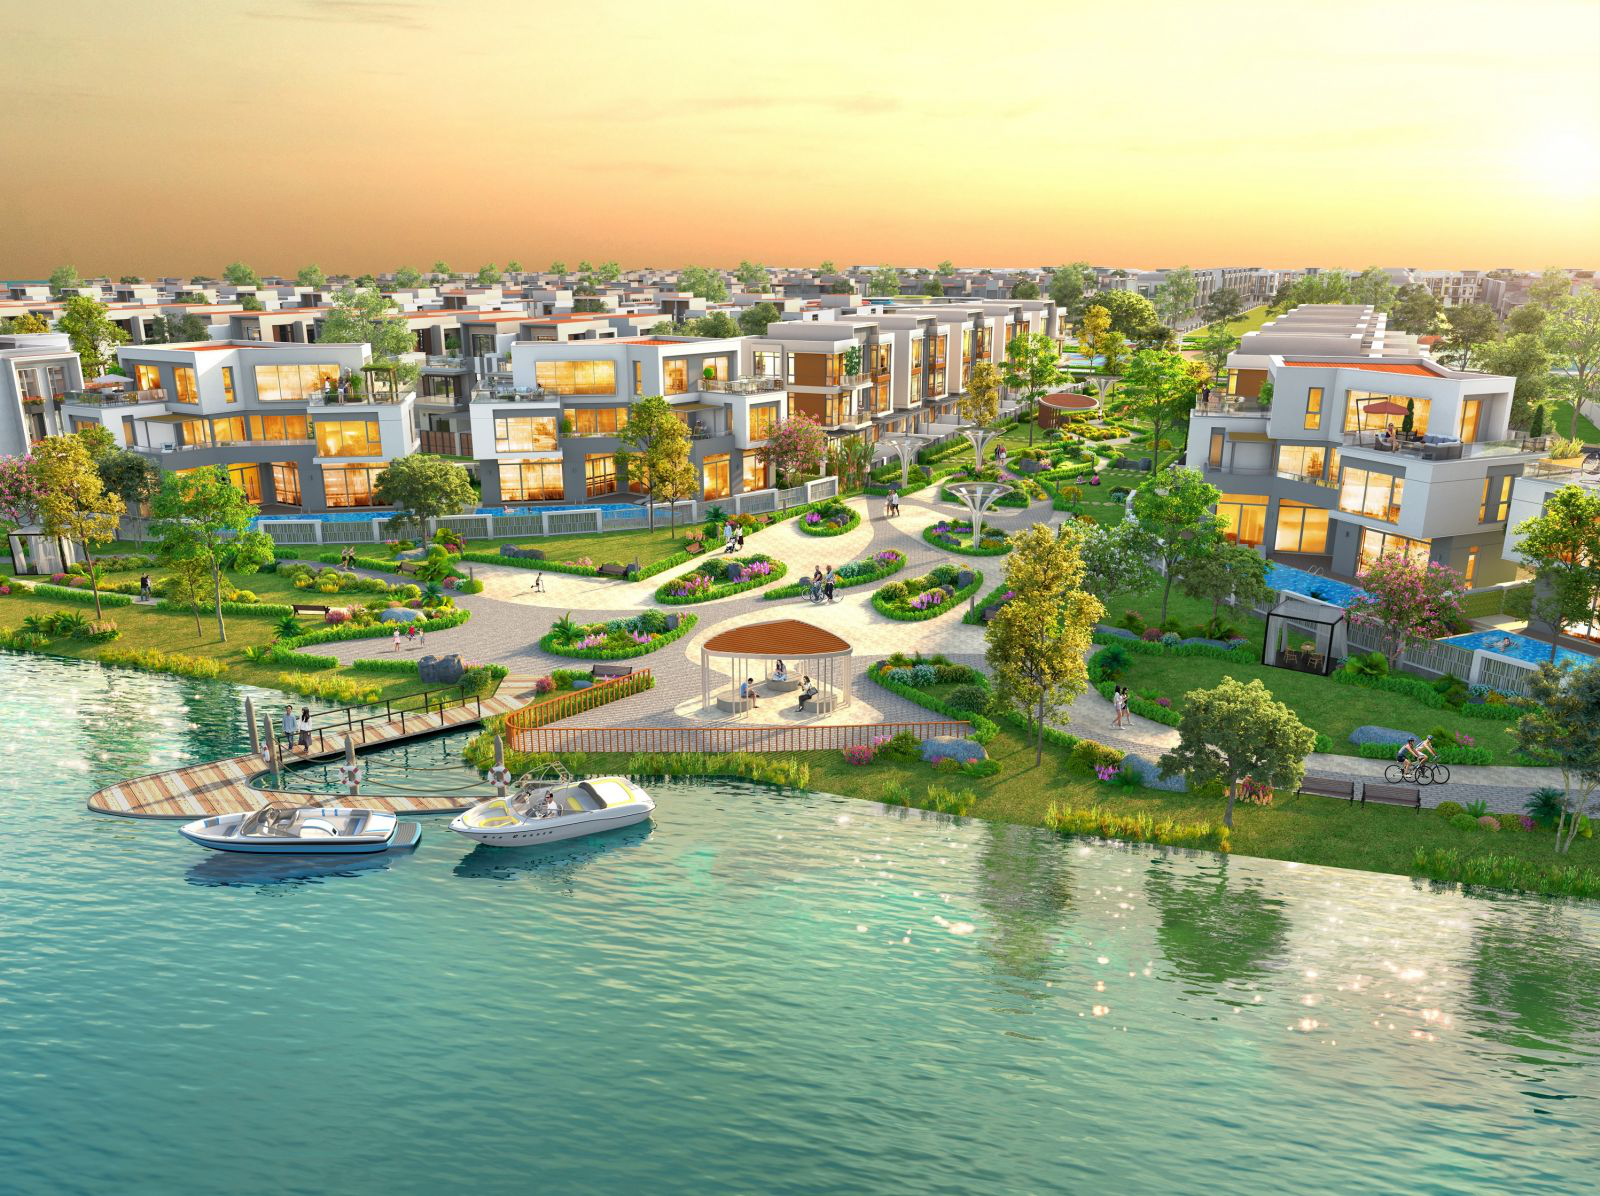 Đô thị sinh thái thông minh Aqua City quy mô 1.000ha của Tập đoàn Novaland nằm trong bán kính cách sân bay Long Thành chỉ 15 phút khi hạ tầng hoàn thiện